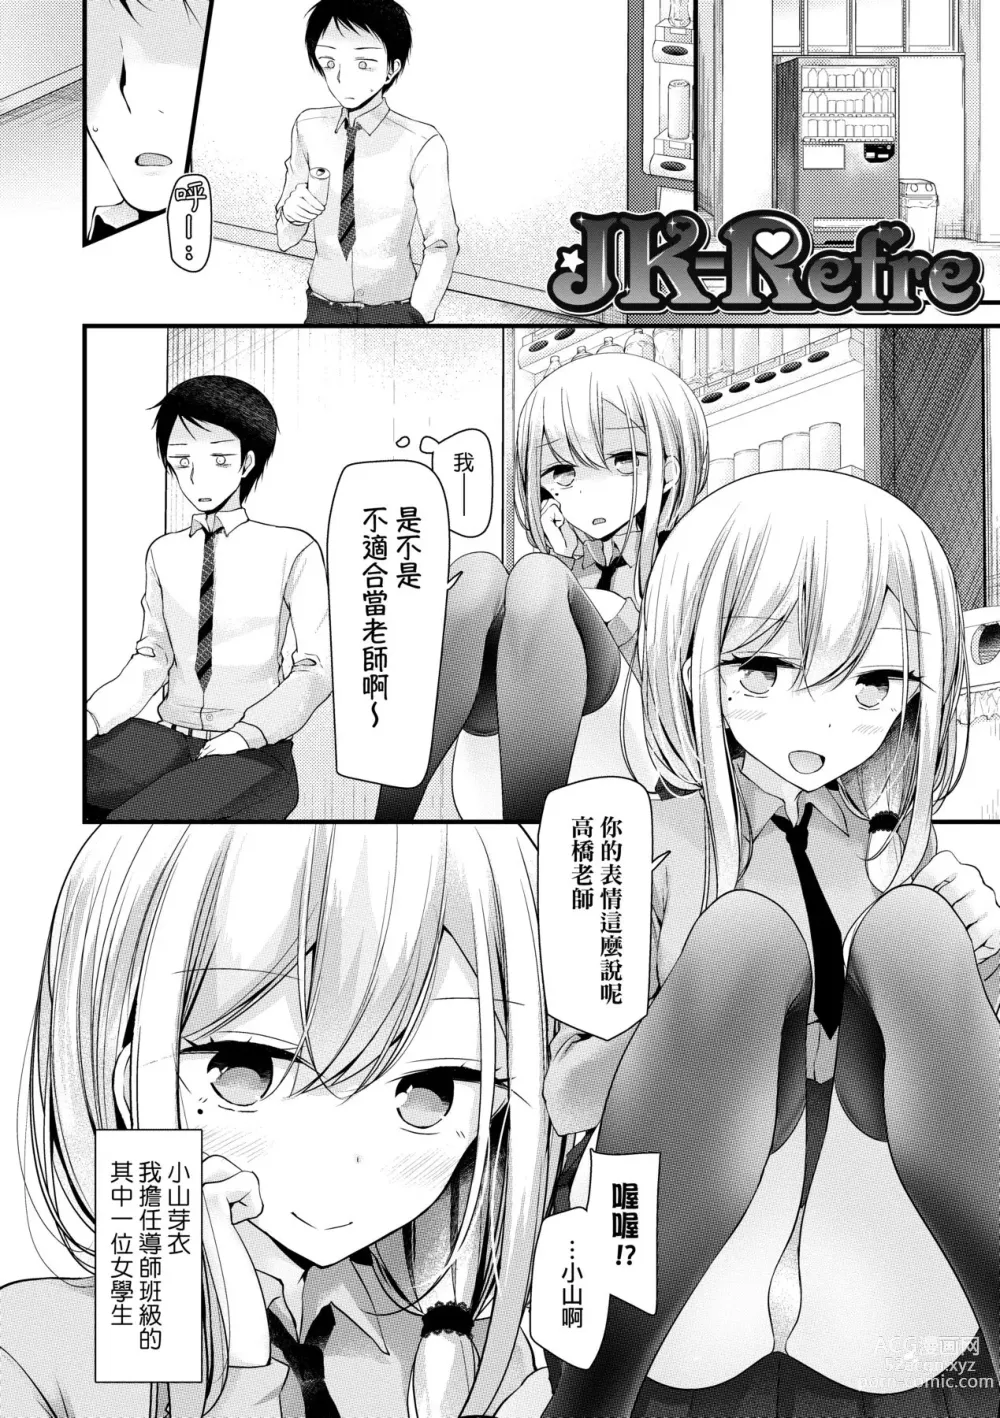 Page 7 of manga JK.REFLE (decensored)